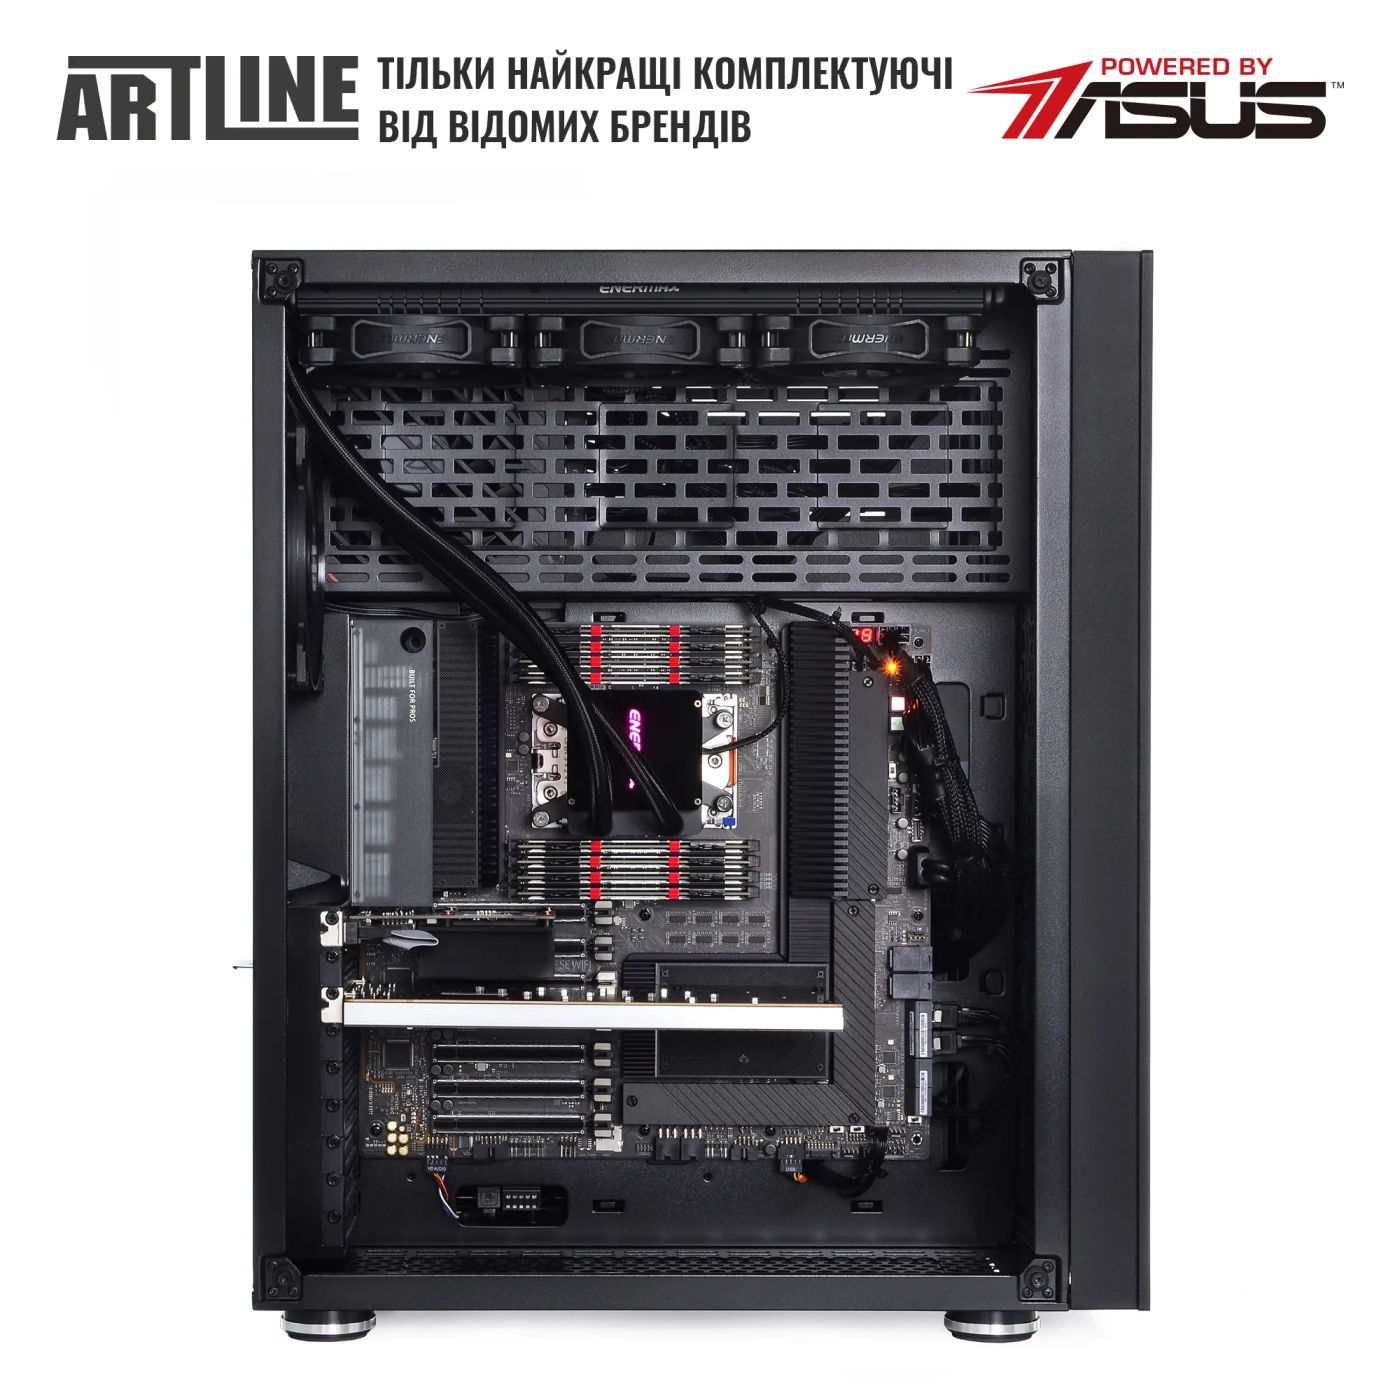 Купить Сервер ARTLINE Business T85v05 - фото 5